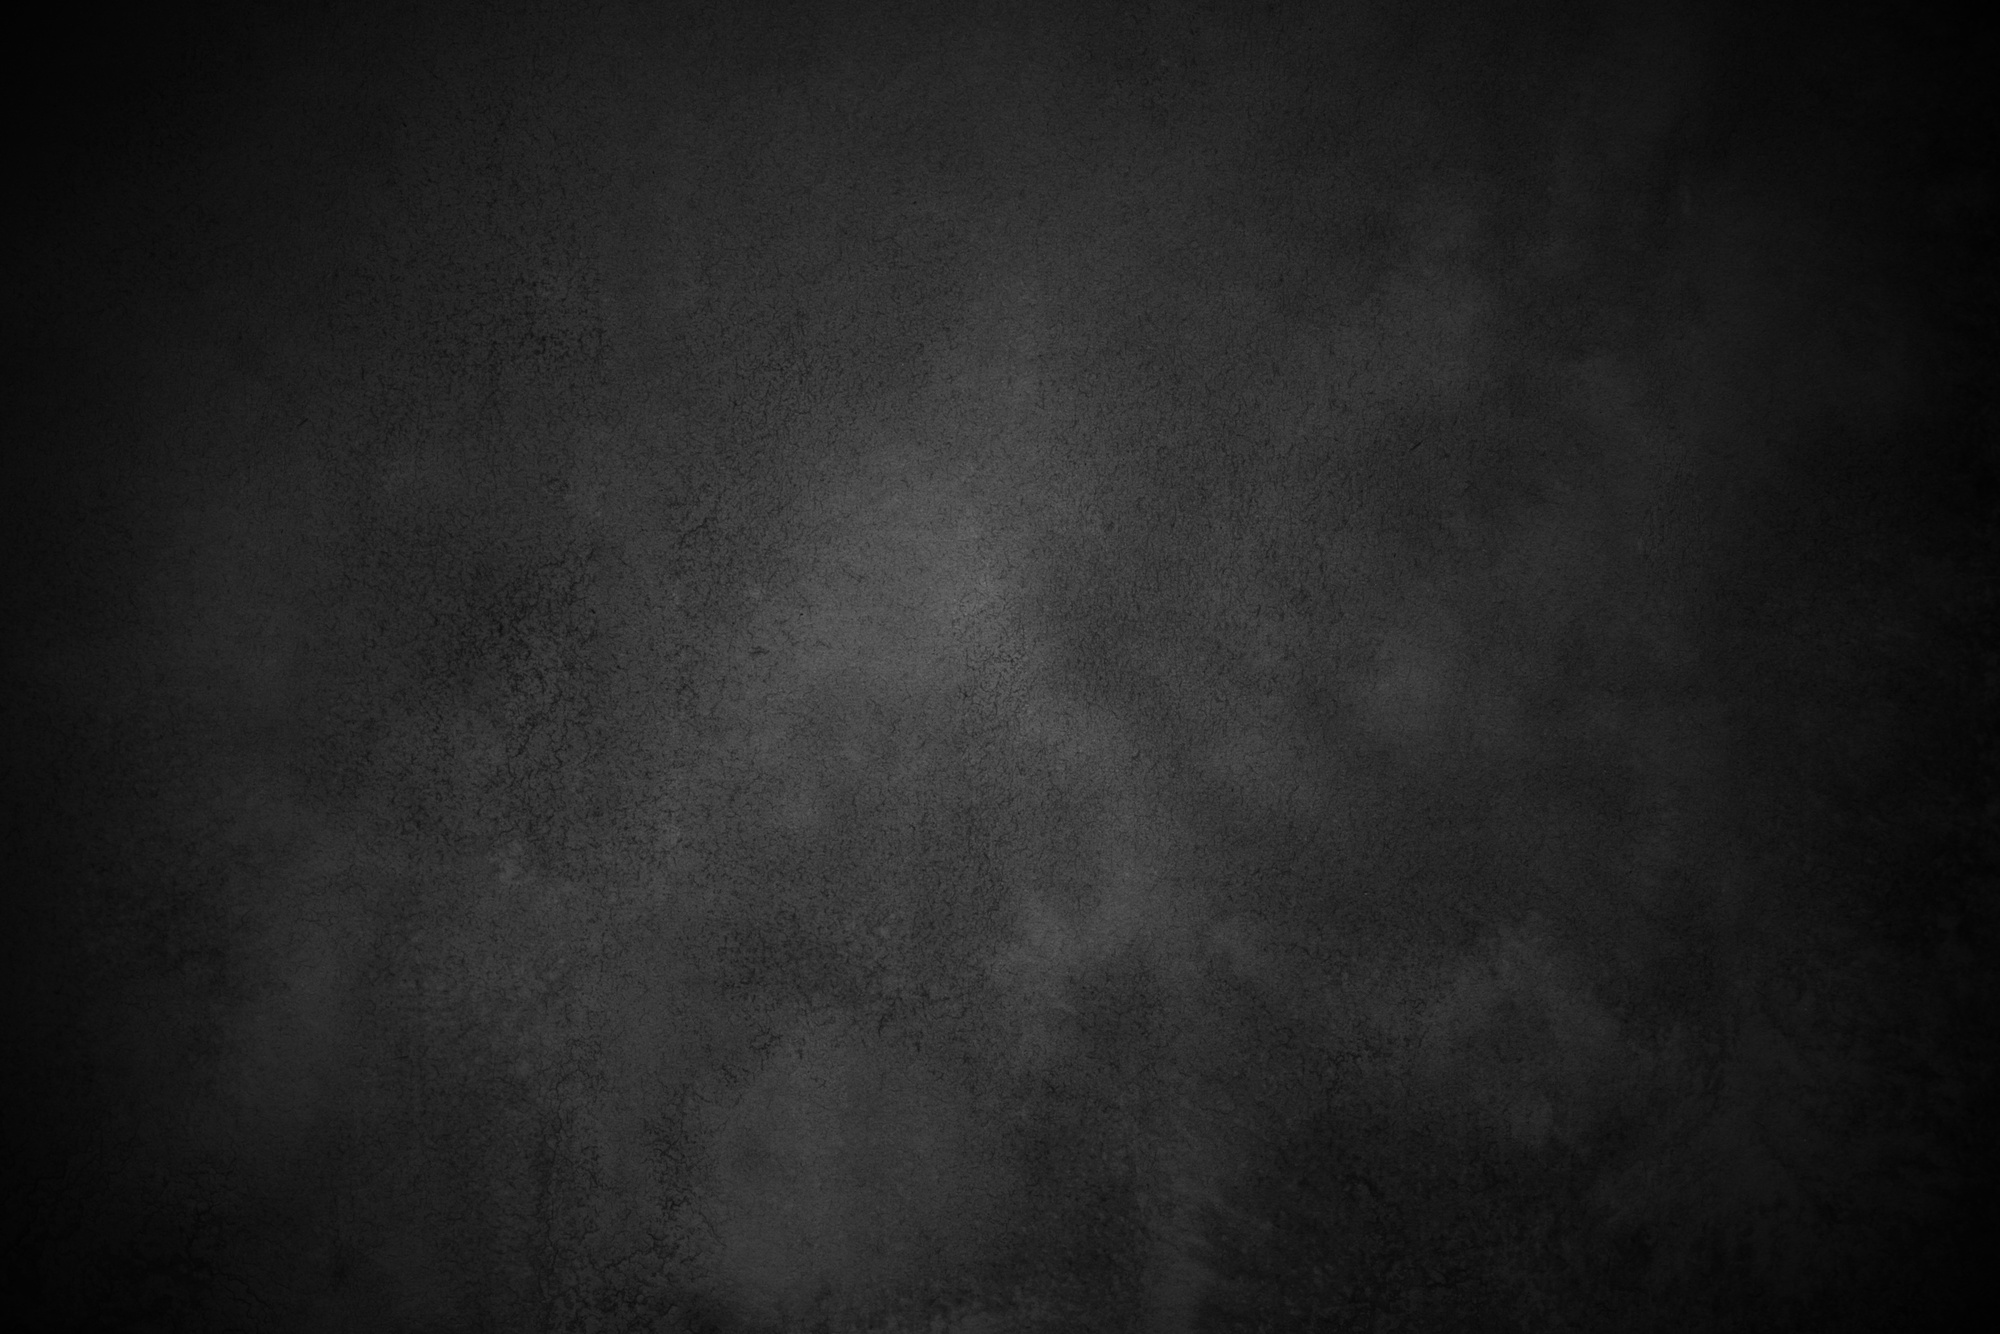 Textured Dark Vignette Black Background